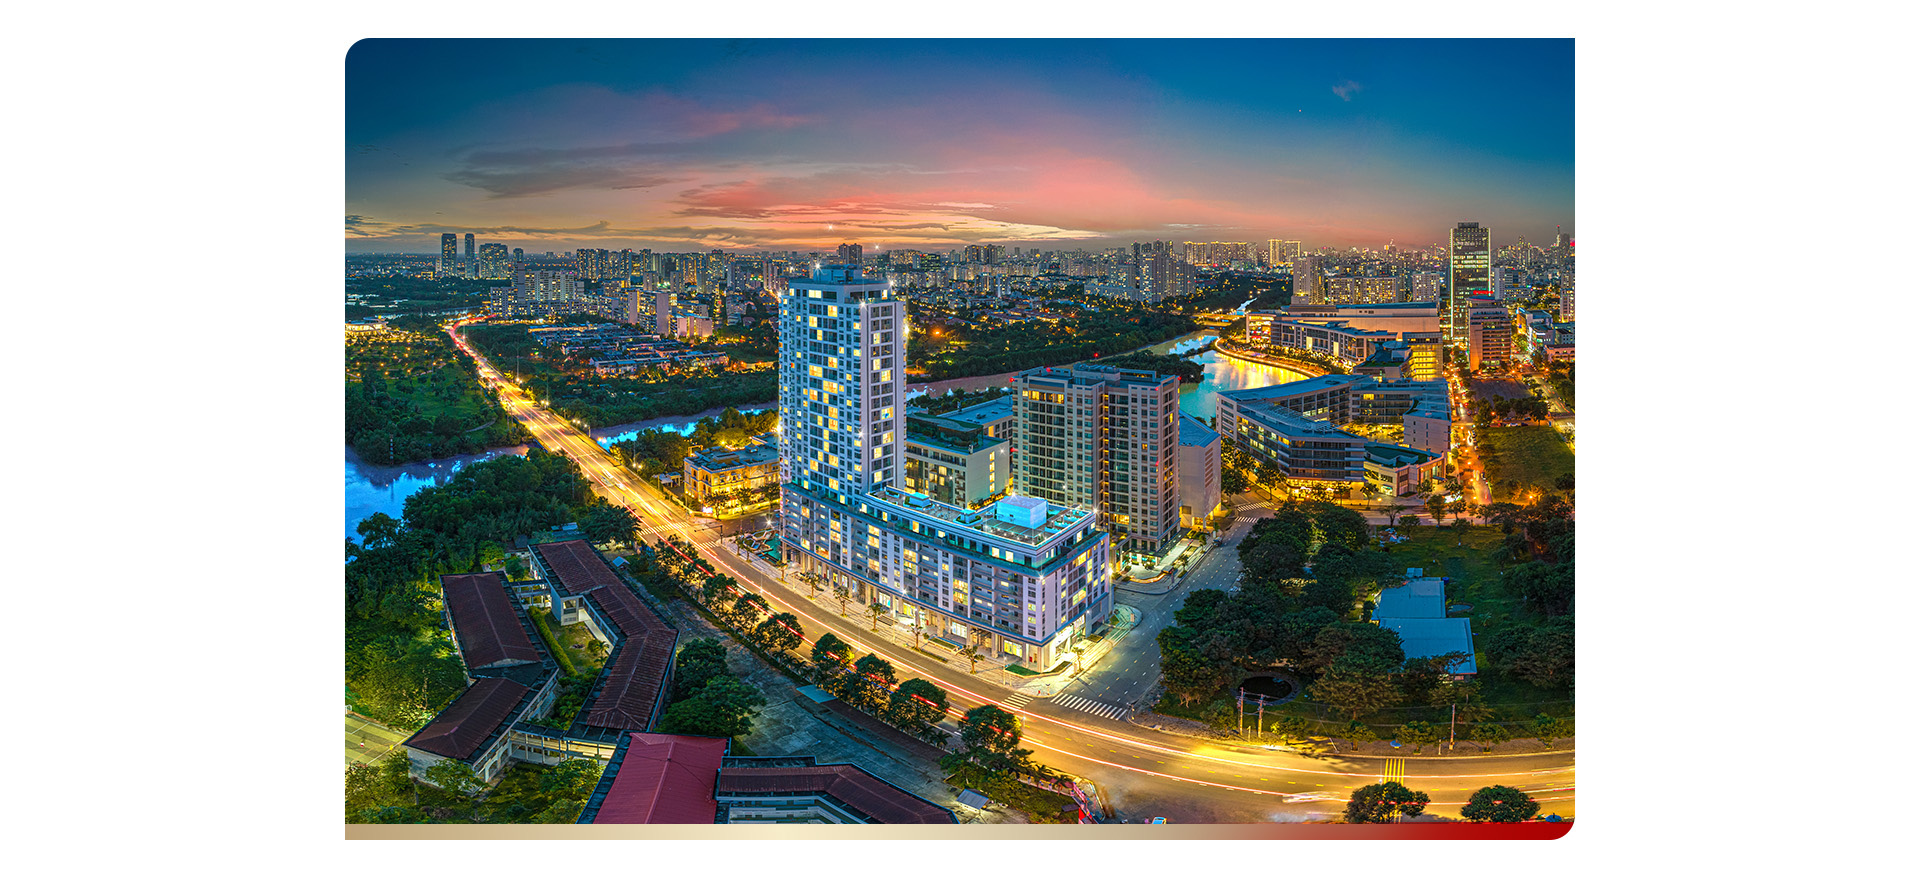 Bất động sản Phú Mỹ Hưng sắp đón sóng tăng trưởng từ loạt cú hích hạ tầng dịch vụ đô thị - Ảnh 8.